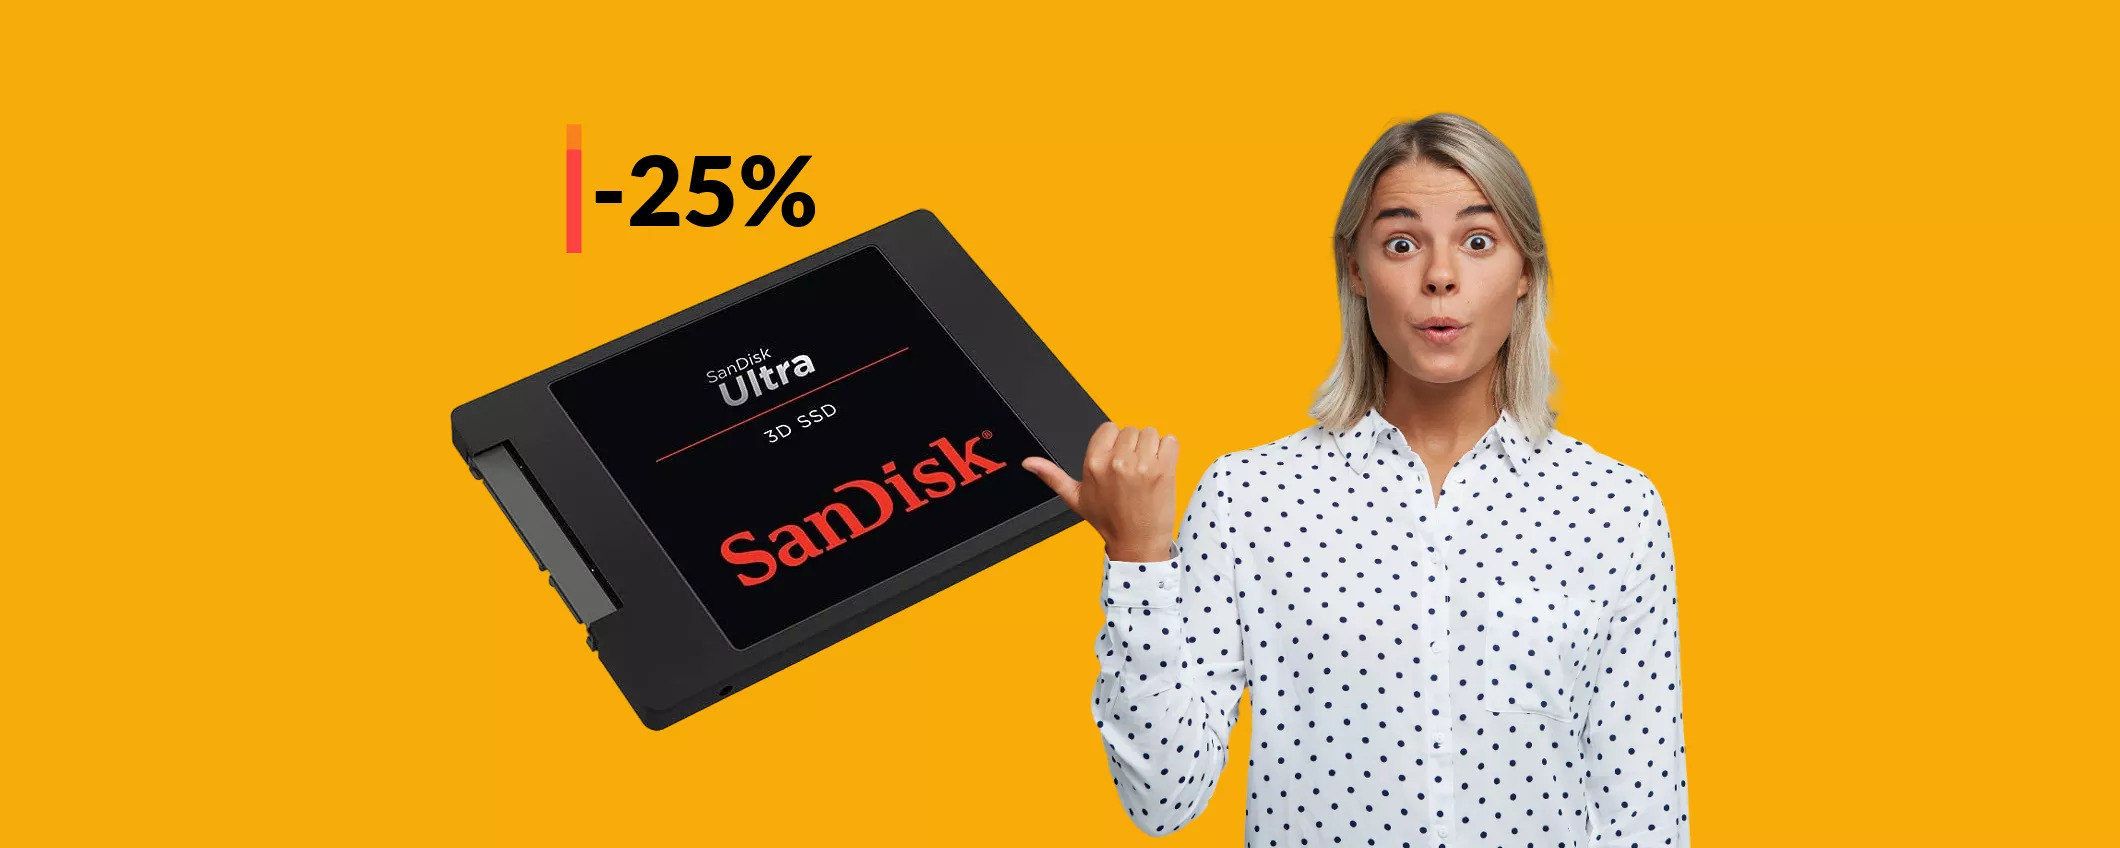 SSD SanDisk 500GB: difficile credere che ora costi appena 63€